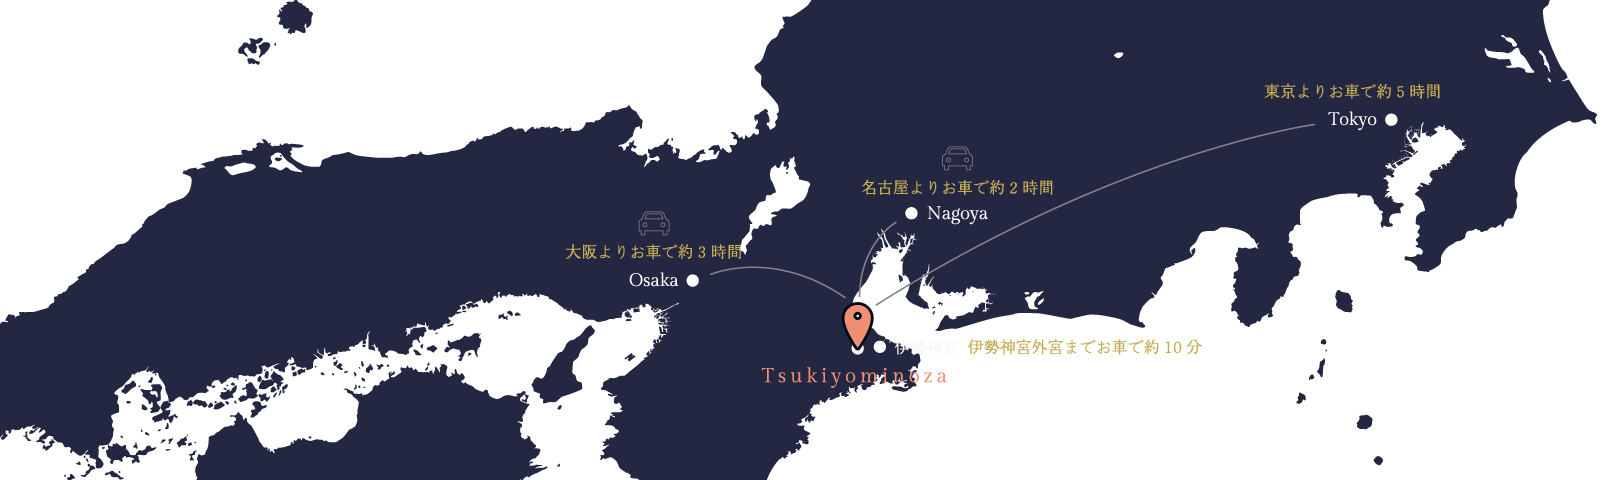 大阪よりお車で約3時間、名古屋よりお車で約2時間、東京よりお車で約5時間、伊勢神宮外宮までお車で約10分